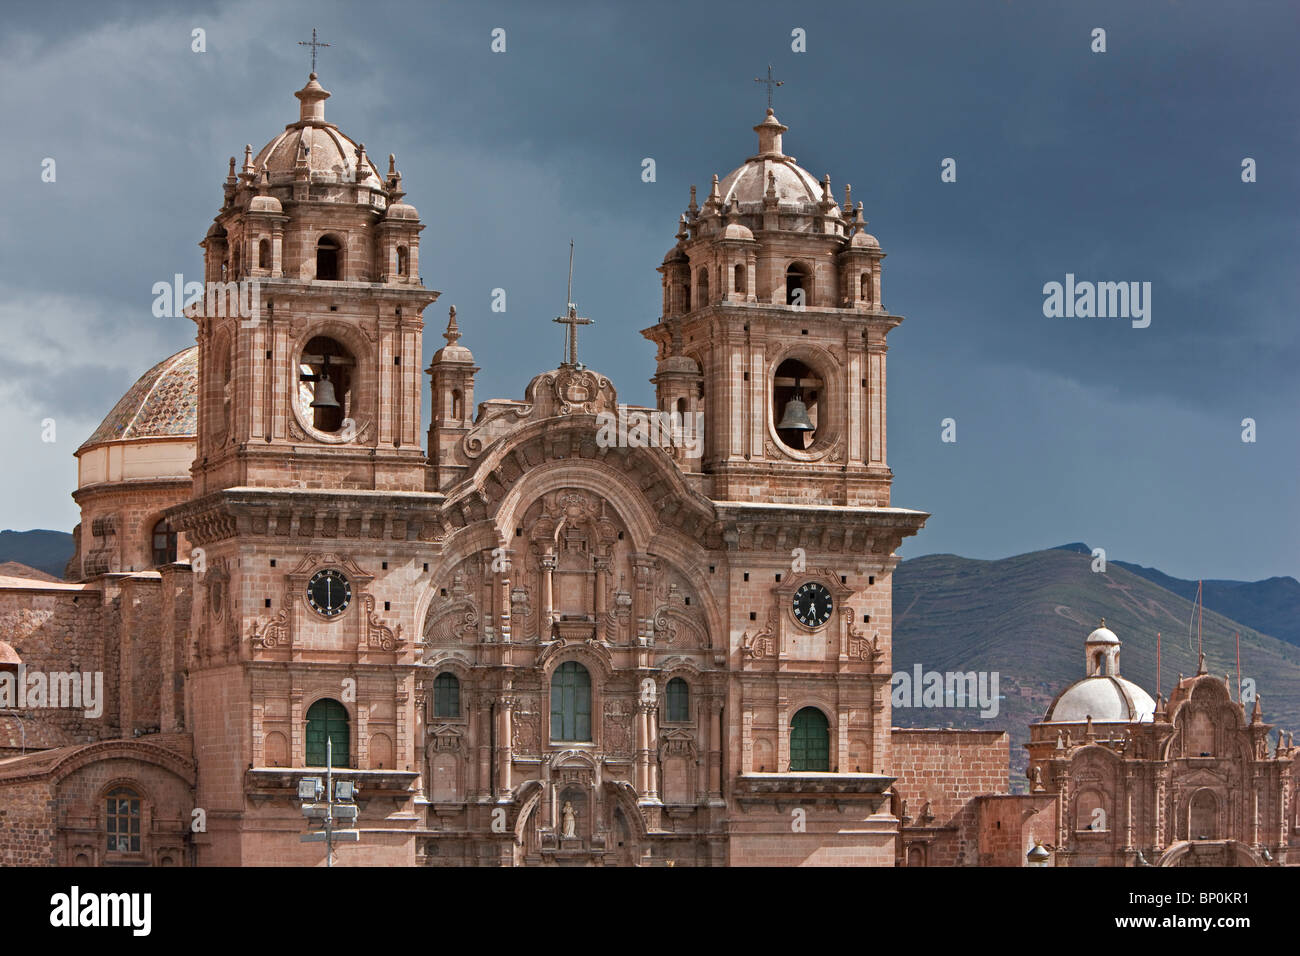 Le Pérou, la façade baroque de l'Iglesia de la Compania de Jesus église, Cusco, Plaza de Armas. Construite par les Jésuites, 1651. Banque D'Images